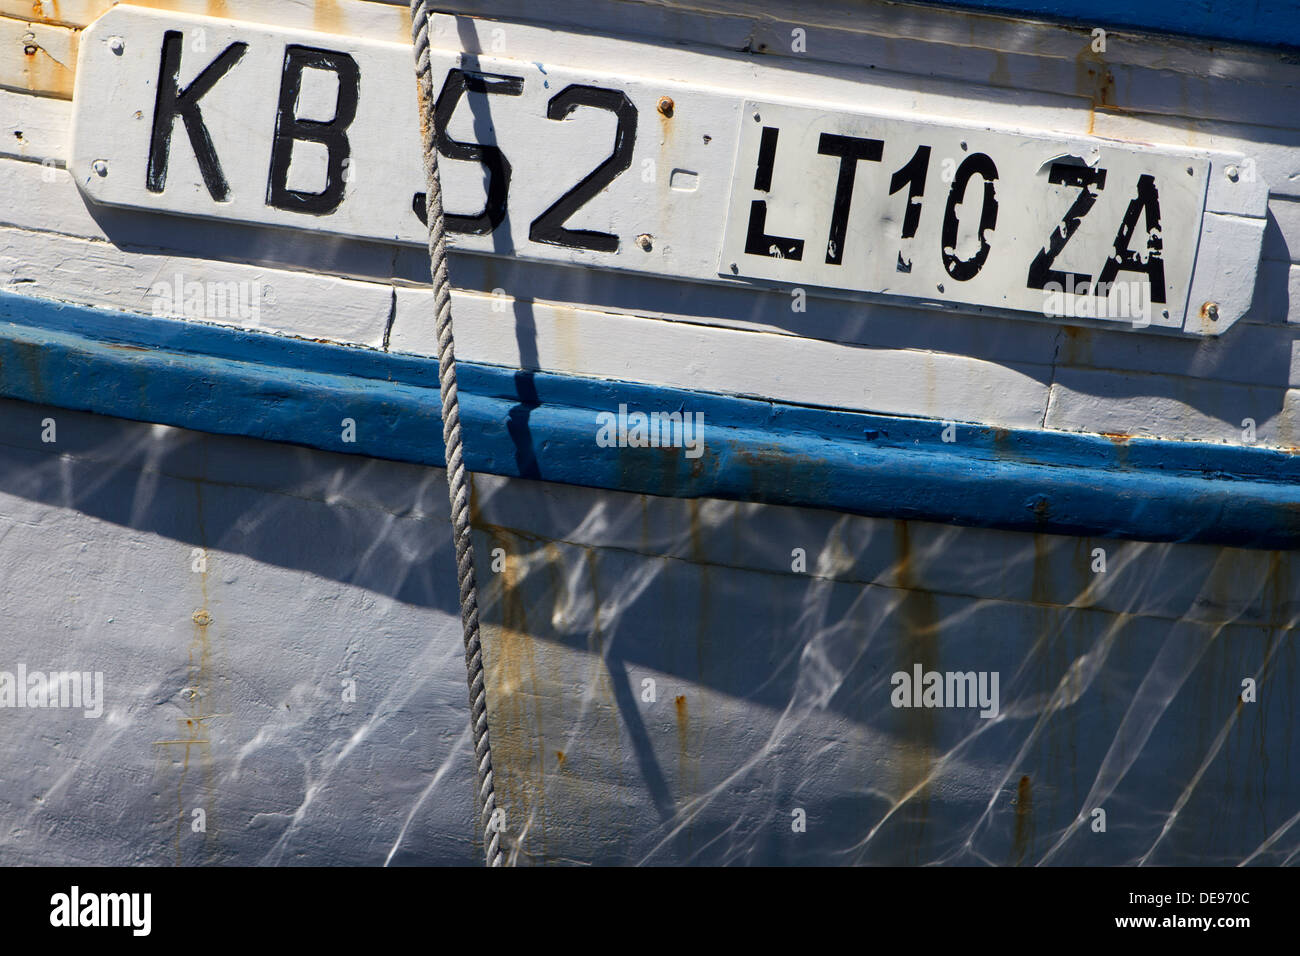 Kalk Bay e peschereccio numero di registrazione. Foto Stock